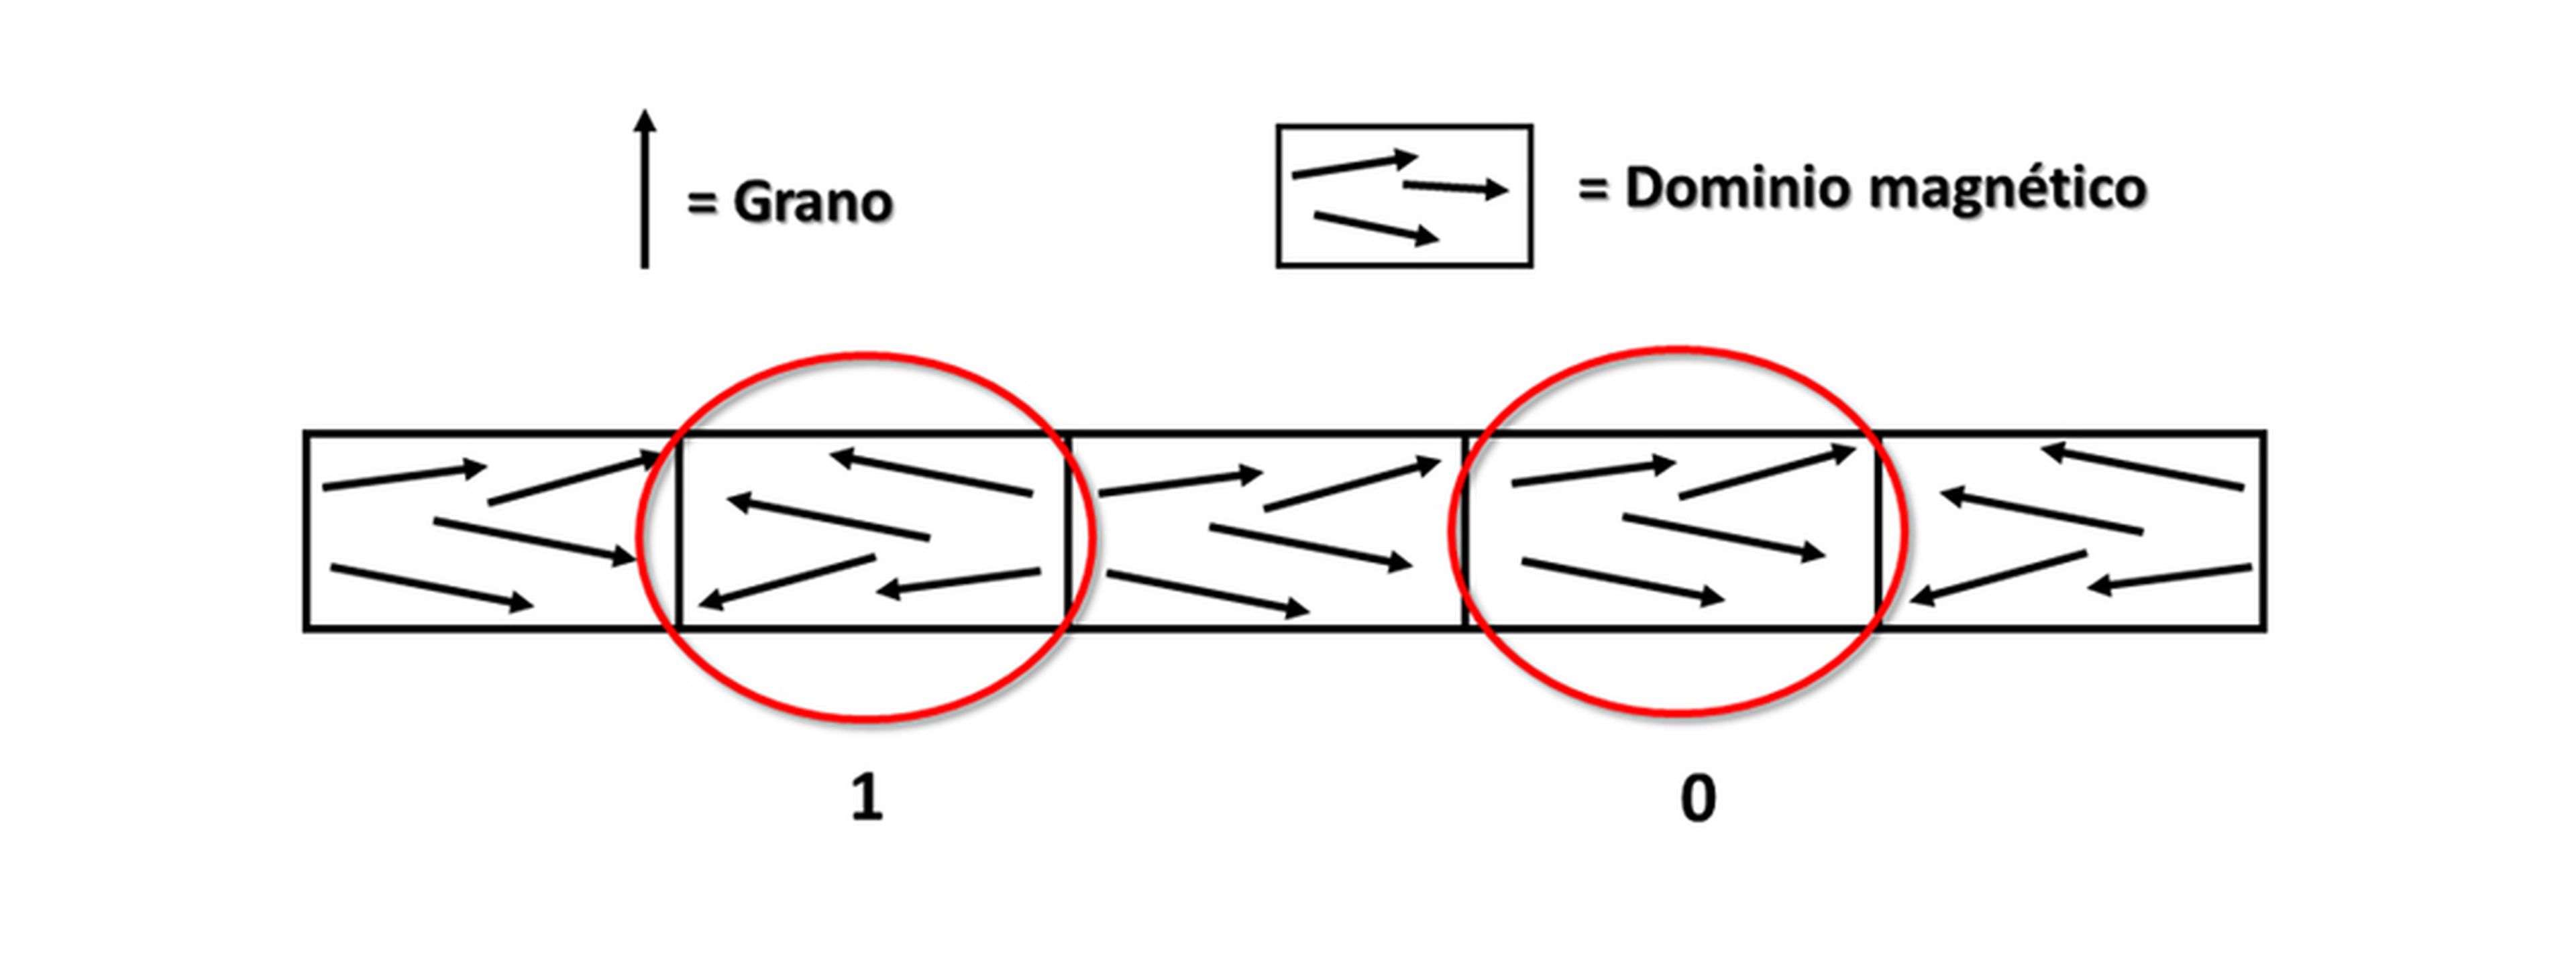 Cómo los granos se combinan para formar un dominio magnético con una u otra orientación.